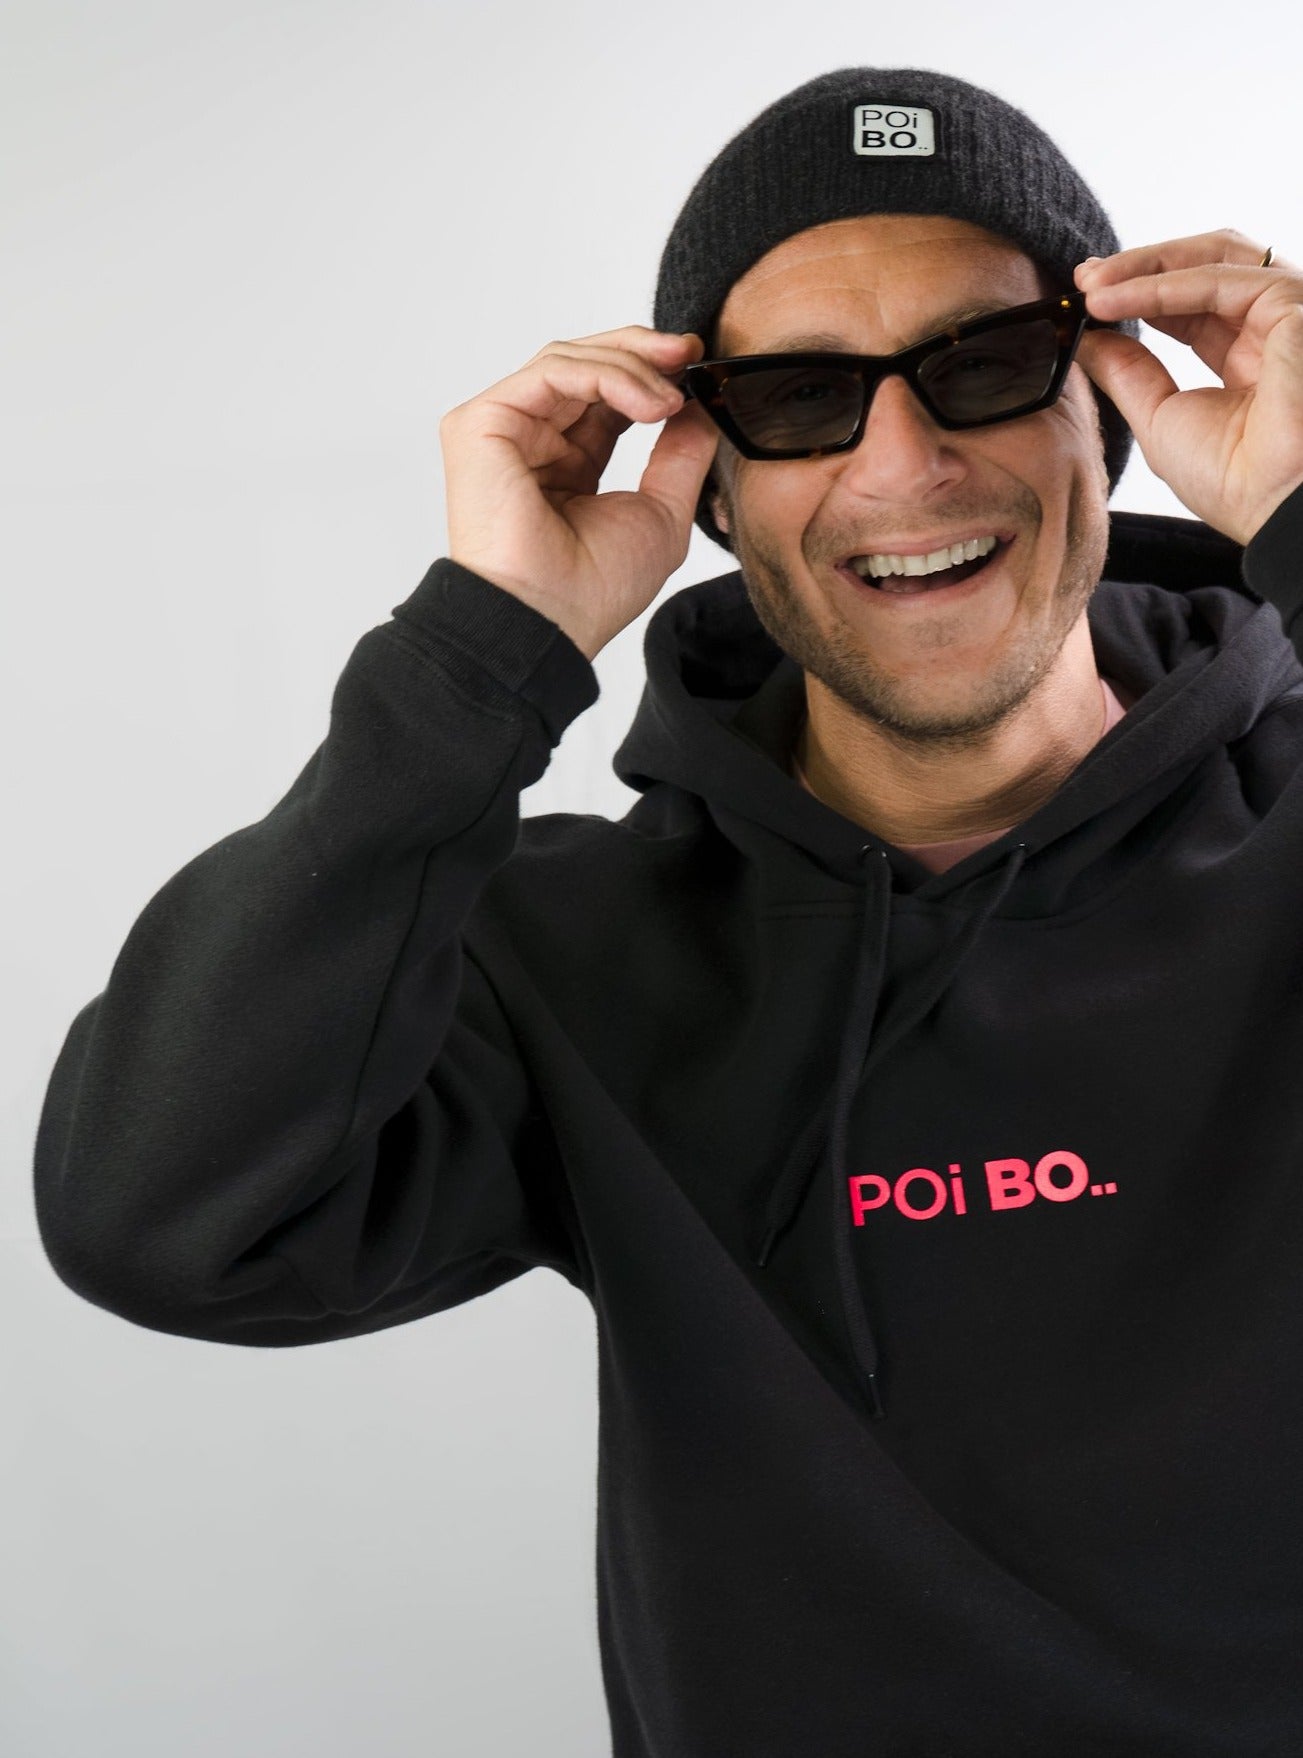 Hoodie "POi BO.." - Classic